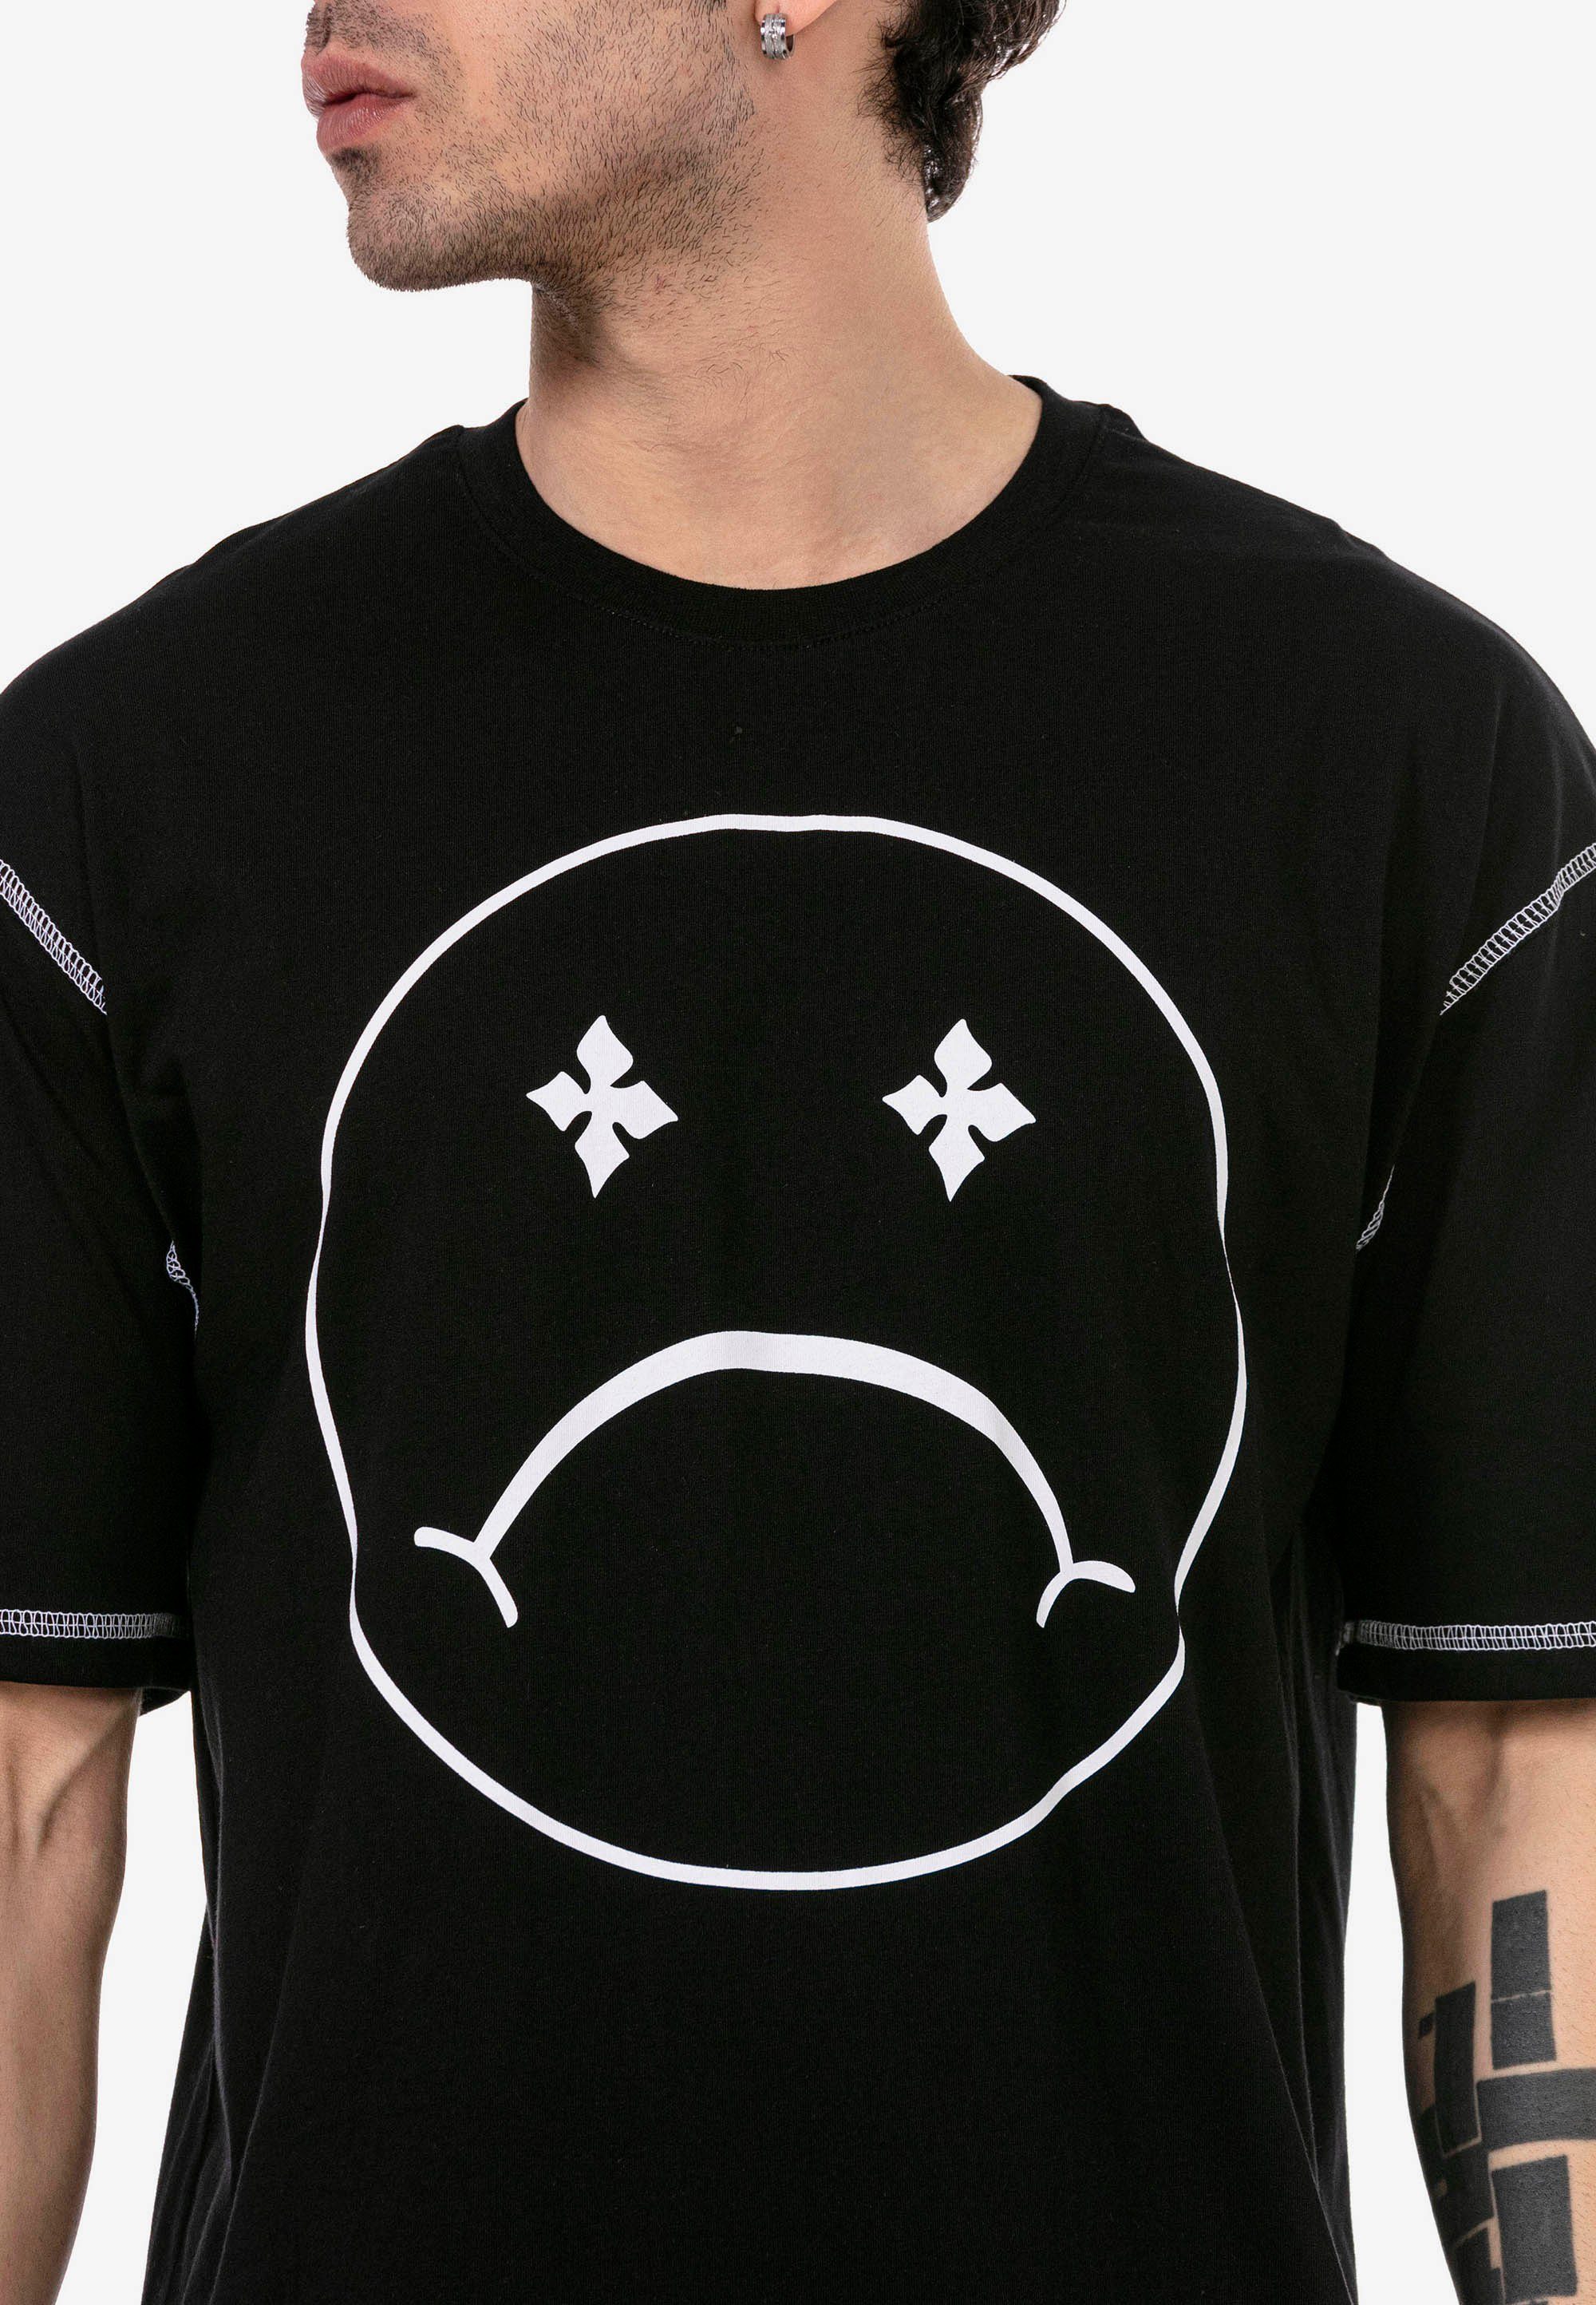 RedBridge T-Shirt Aberdeen mit schwarz Sad modischem Smiley-Frontprint